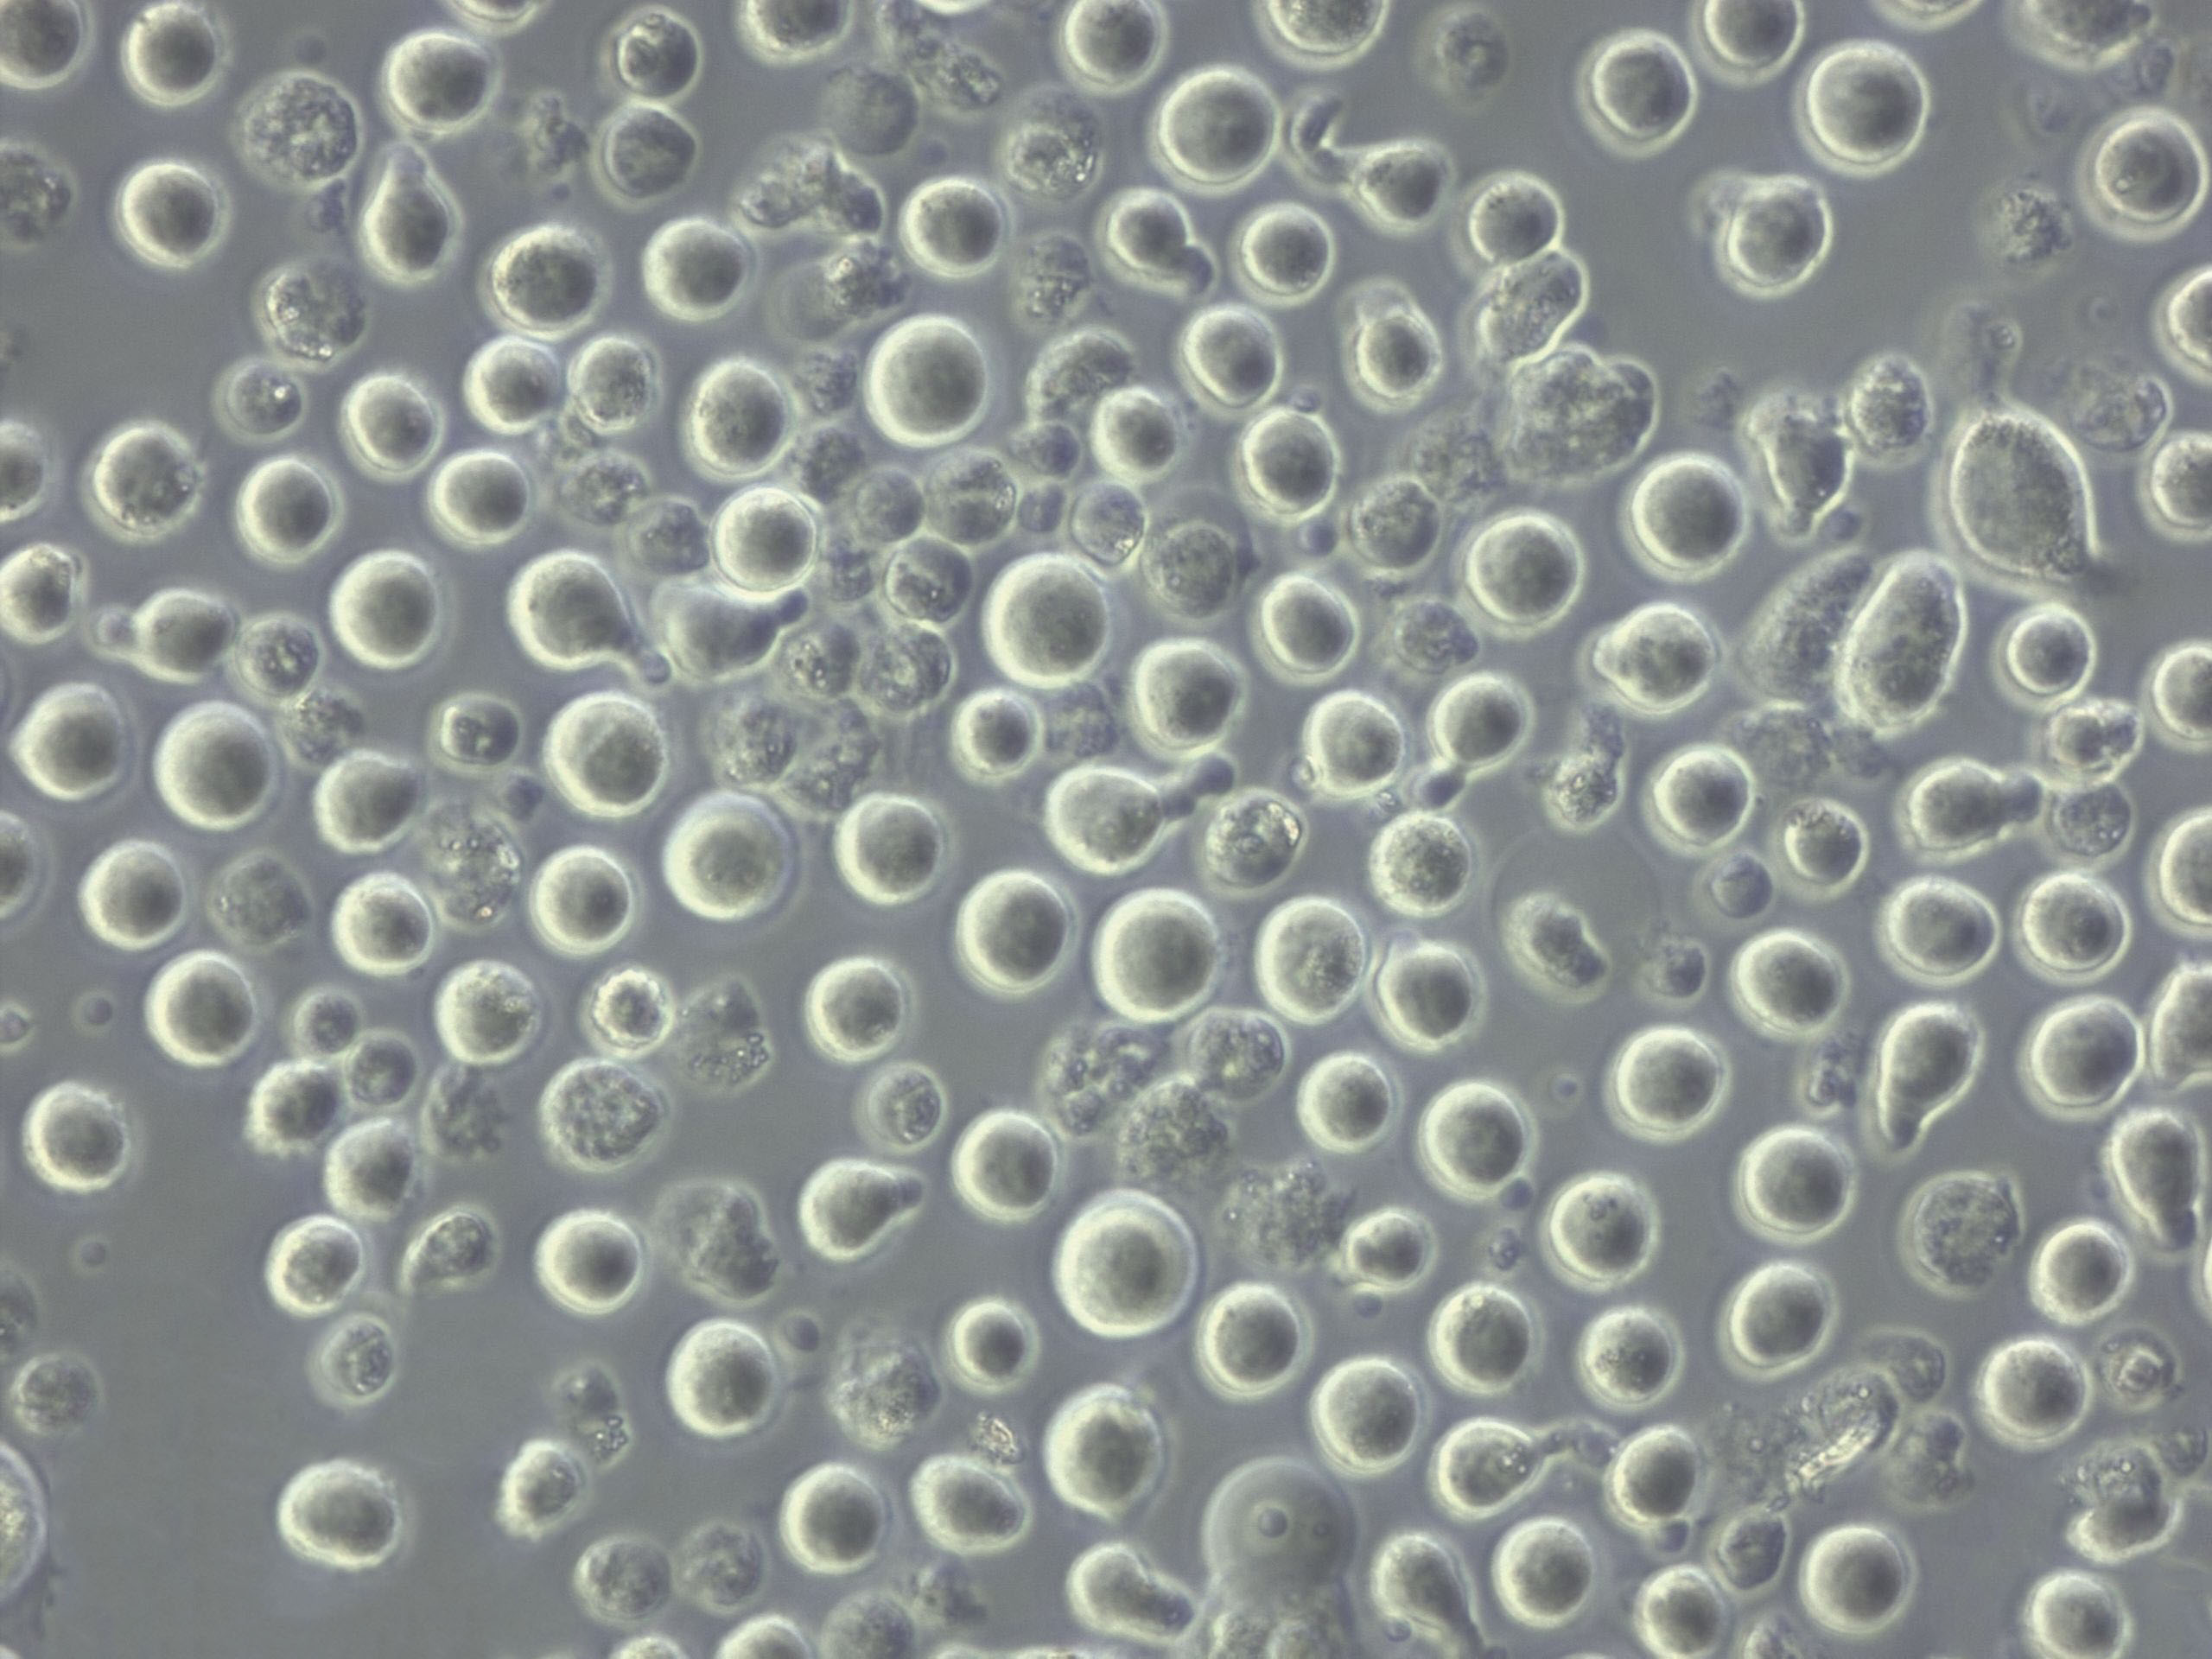 曲霉菌基本固体粉末培养基,Aspergillus Minimal Medium